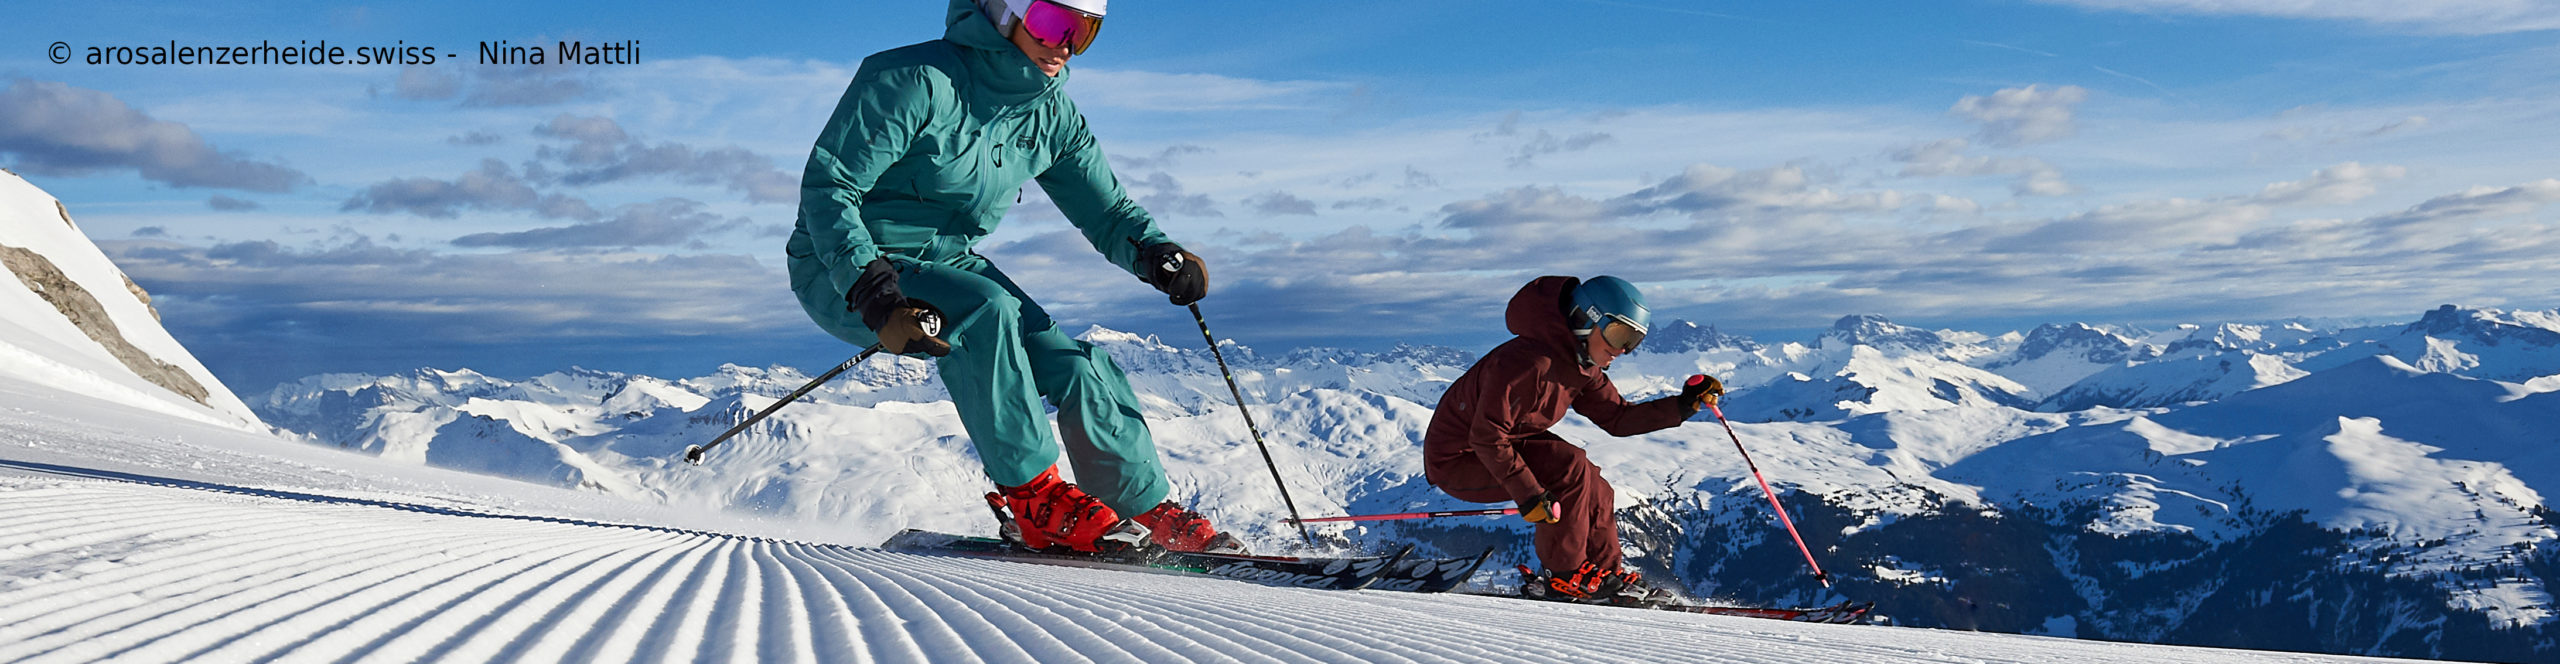 AROSA – LENZERHEIDE – SCHWEIZ – Weltcuport zum Sparpreis über Ostern – 3 Skitage inkl. Skipass 